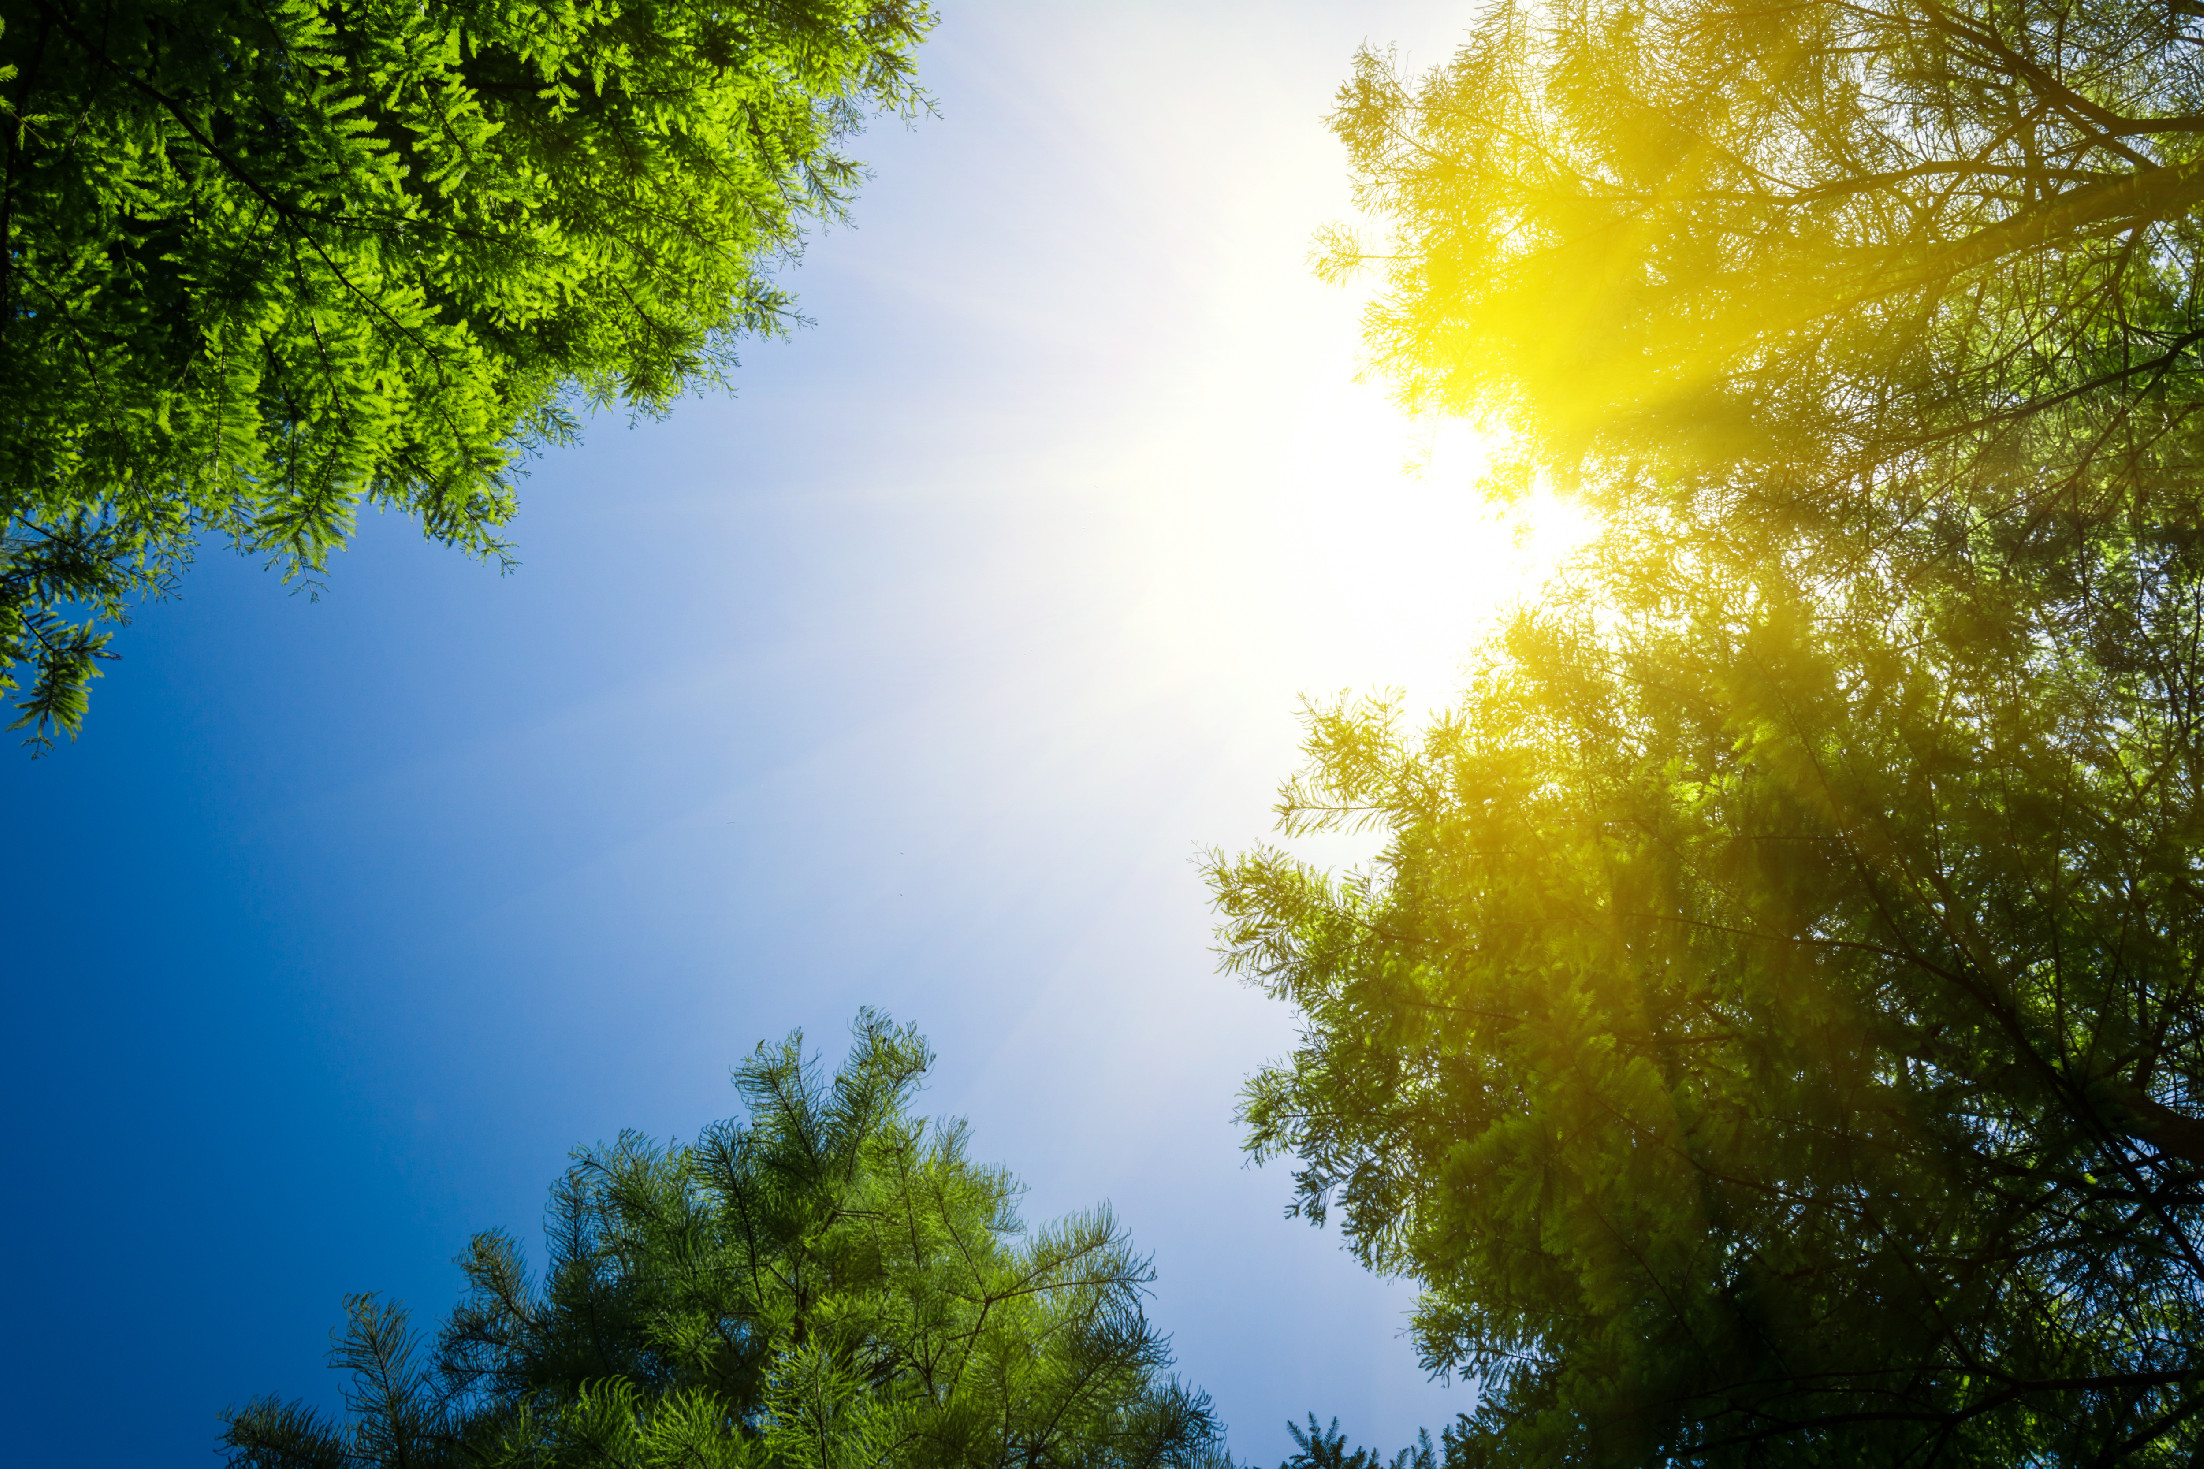 Időjárás – Záporok zavarhatják a sok napsütést a hétvégén